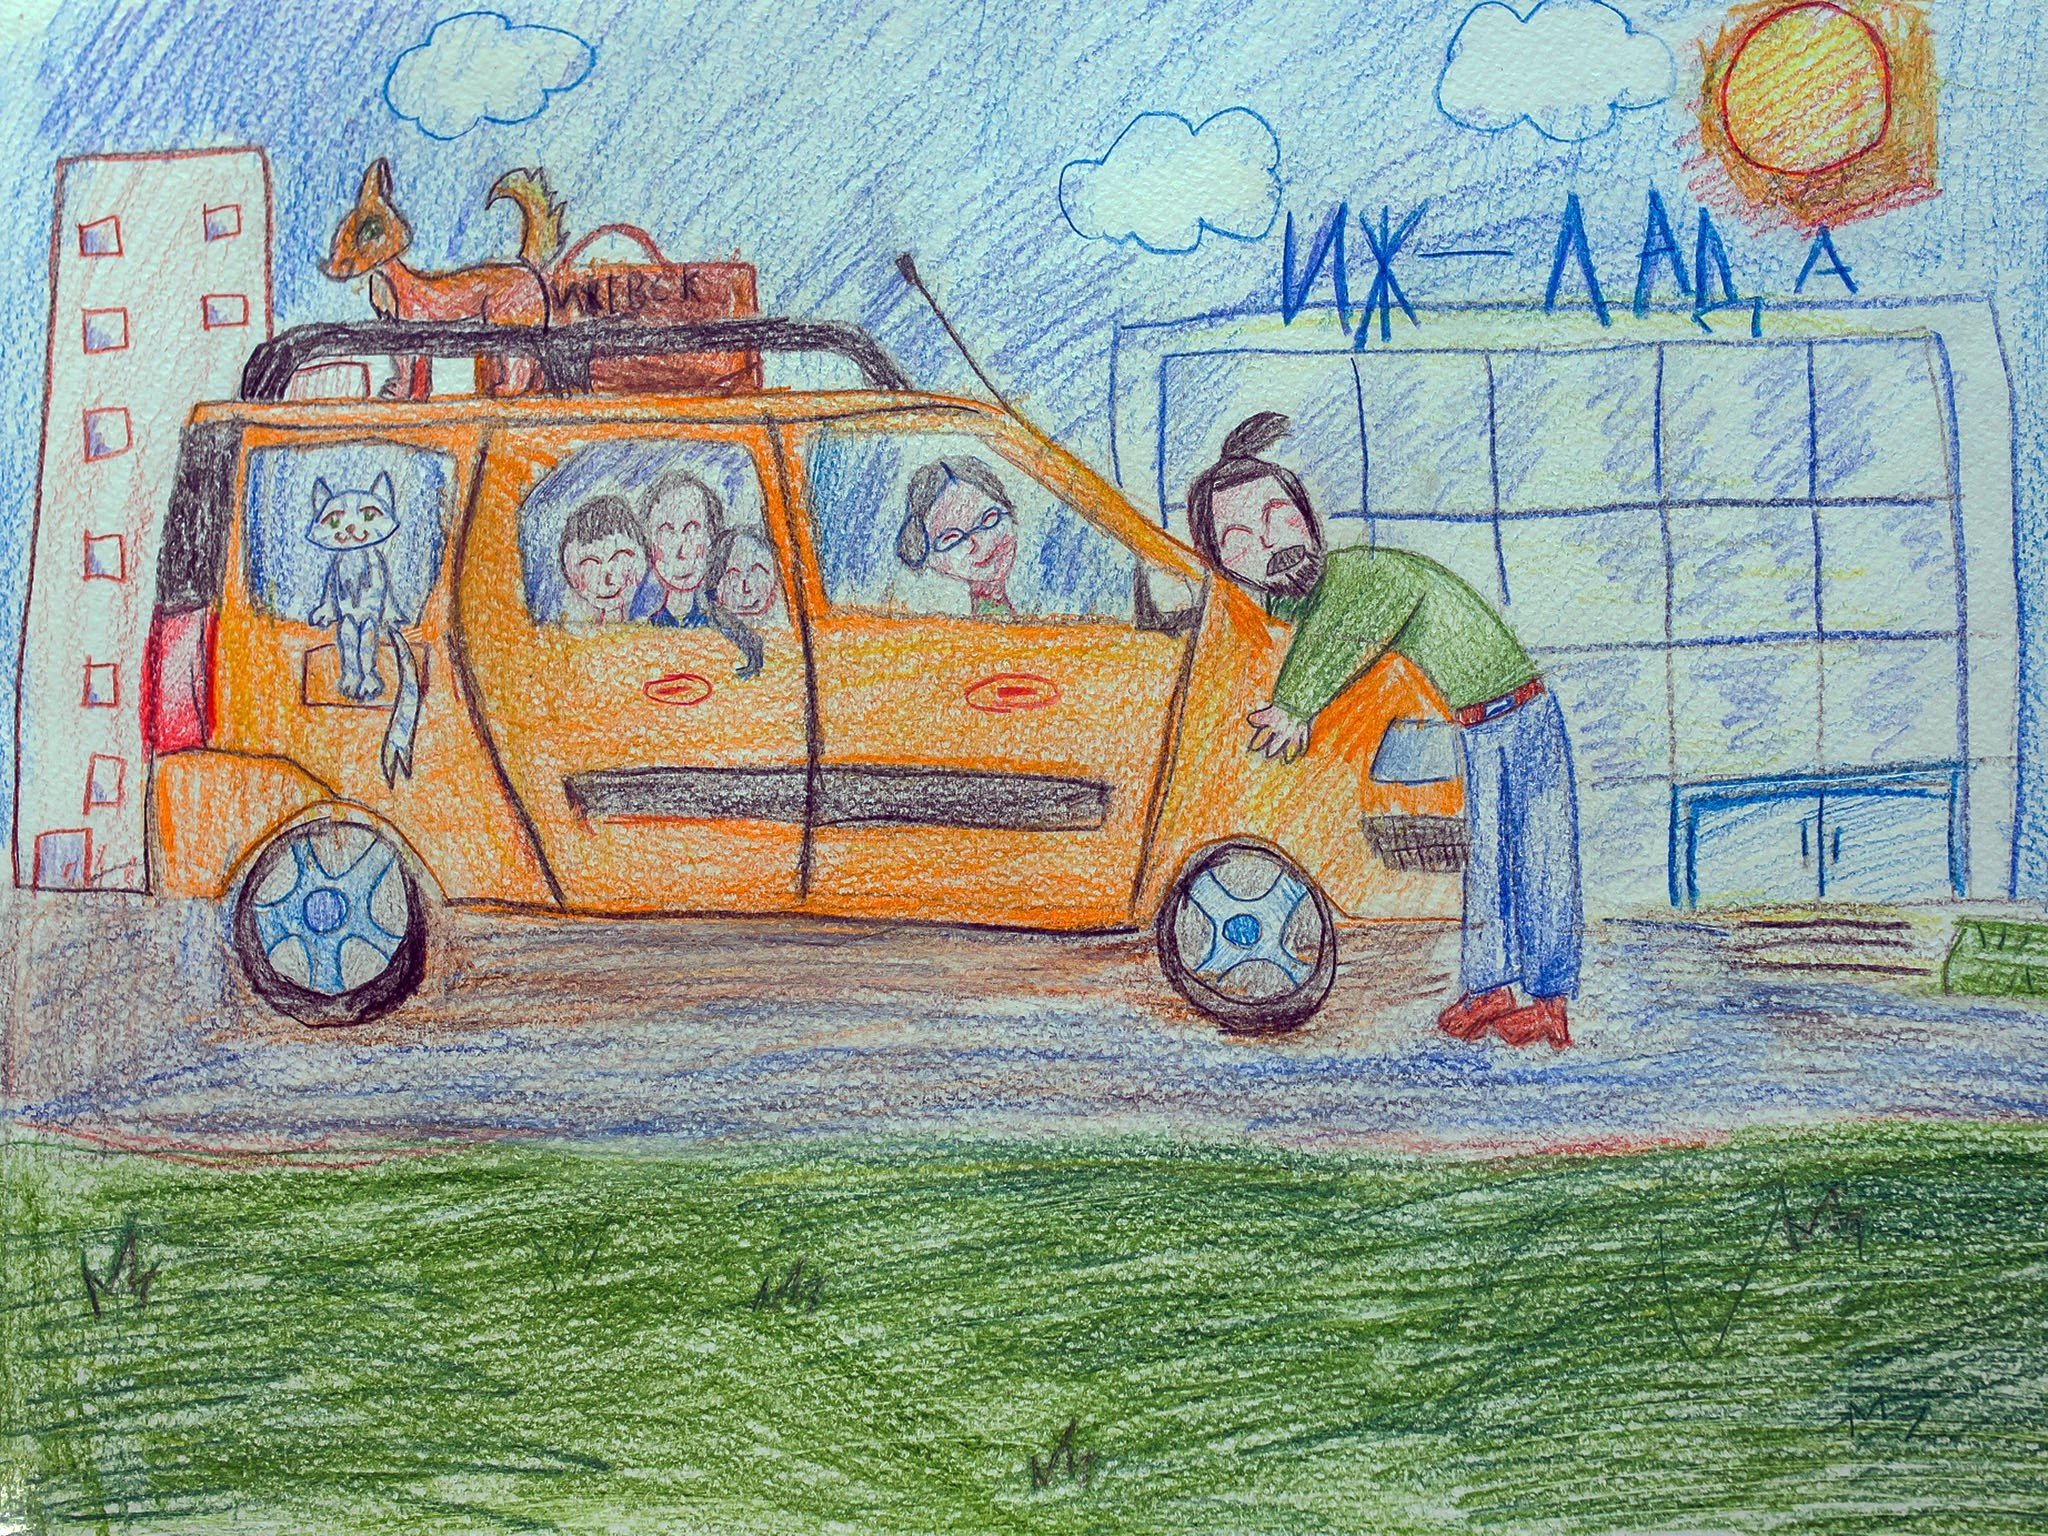 Детский рисунок автомобиля